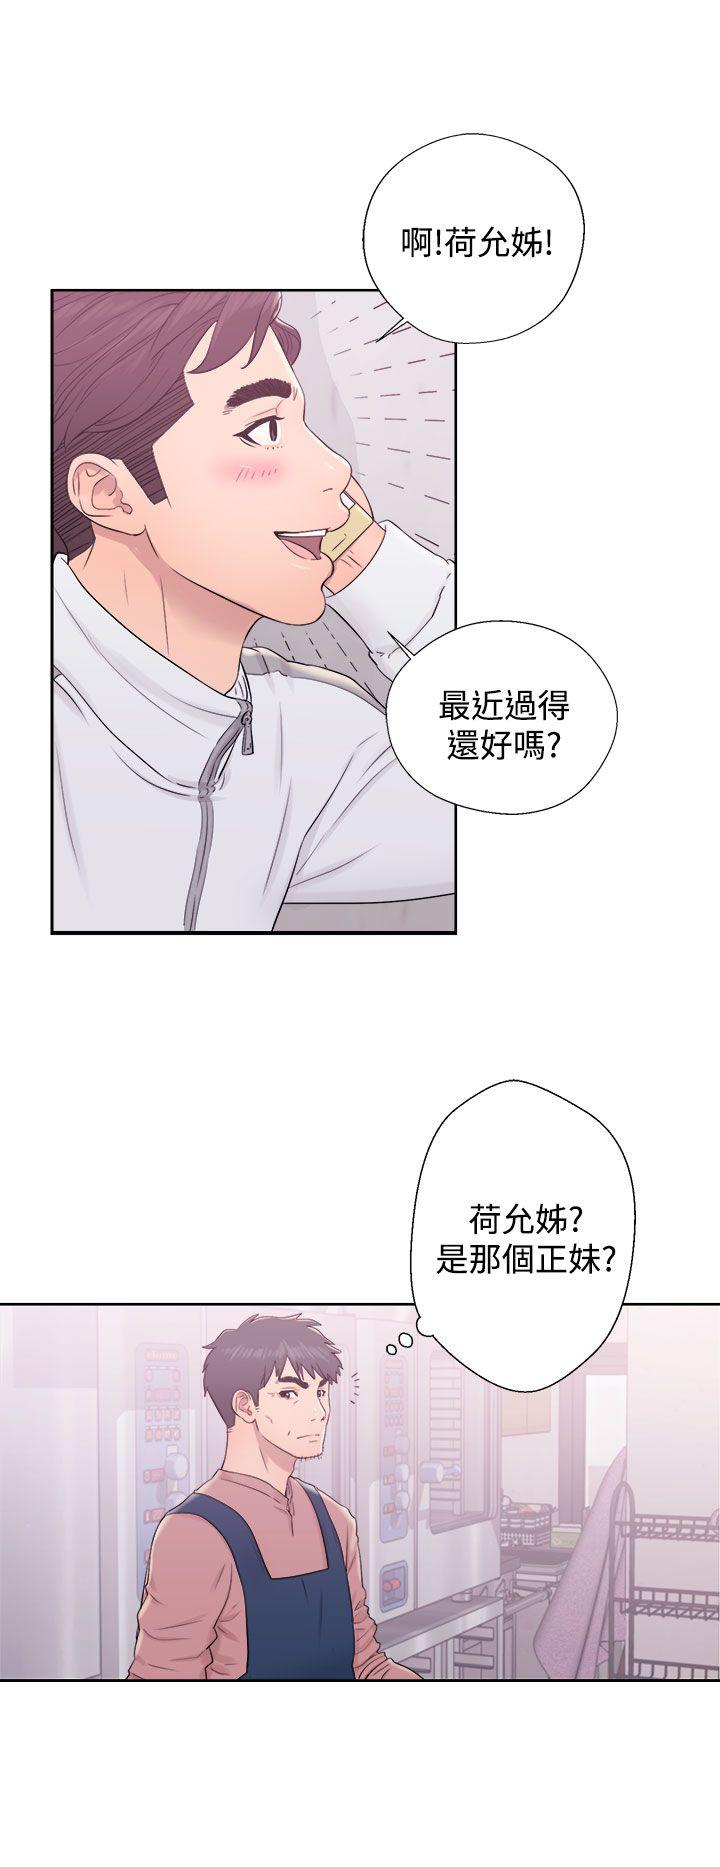 韩国污漫画 青春:逆齡小鮮肉 第9话 16